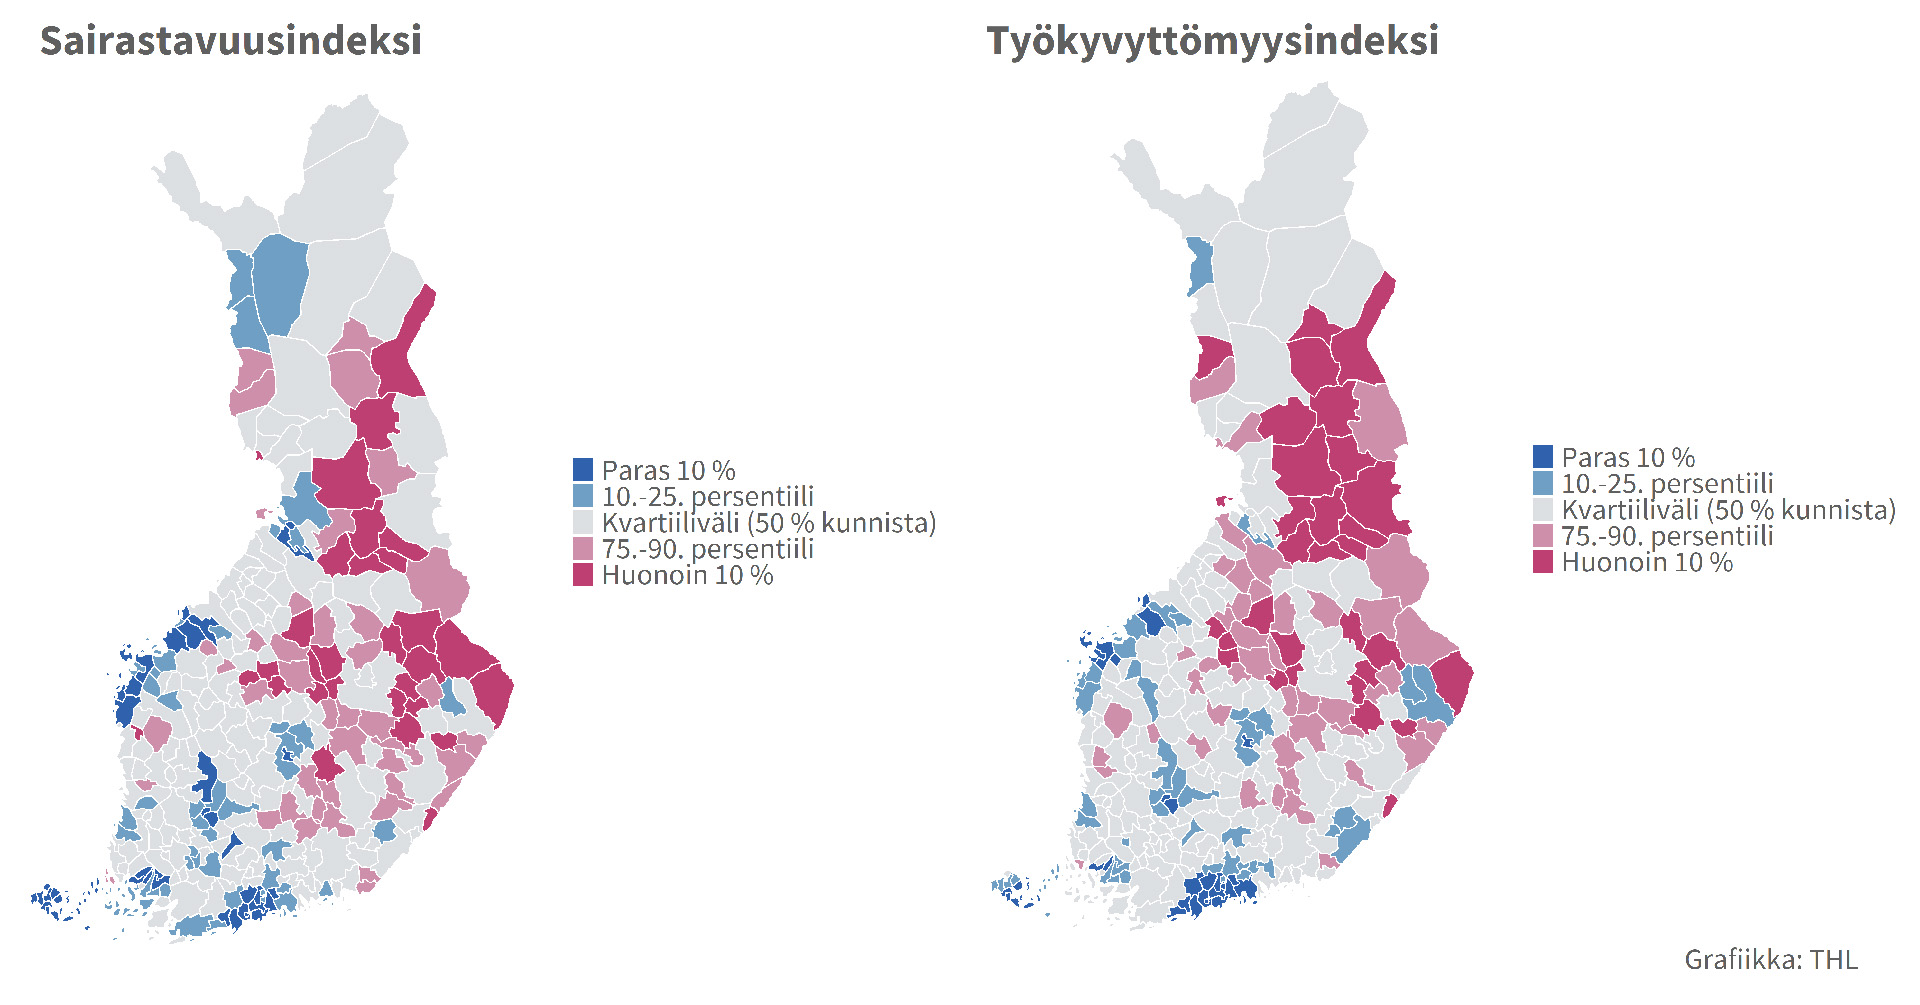 Kansallisen terveysindeksin sairastavuusindeksi ja työkyvyttömyysindeksi kuntatasolla. Kartasta näkee, että työkyvyttömyystilanne ja sairastavuustilanne ovat pahimpia itäisessä ja pohjoisessa Suomessa. Paras tilanne sen sijaan on eteläisessä Suomessa ja rannikkoseuduilla.